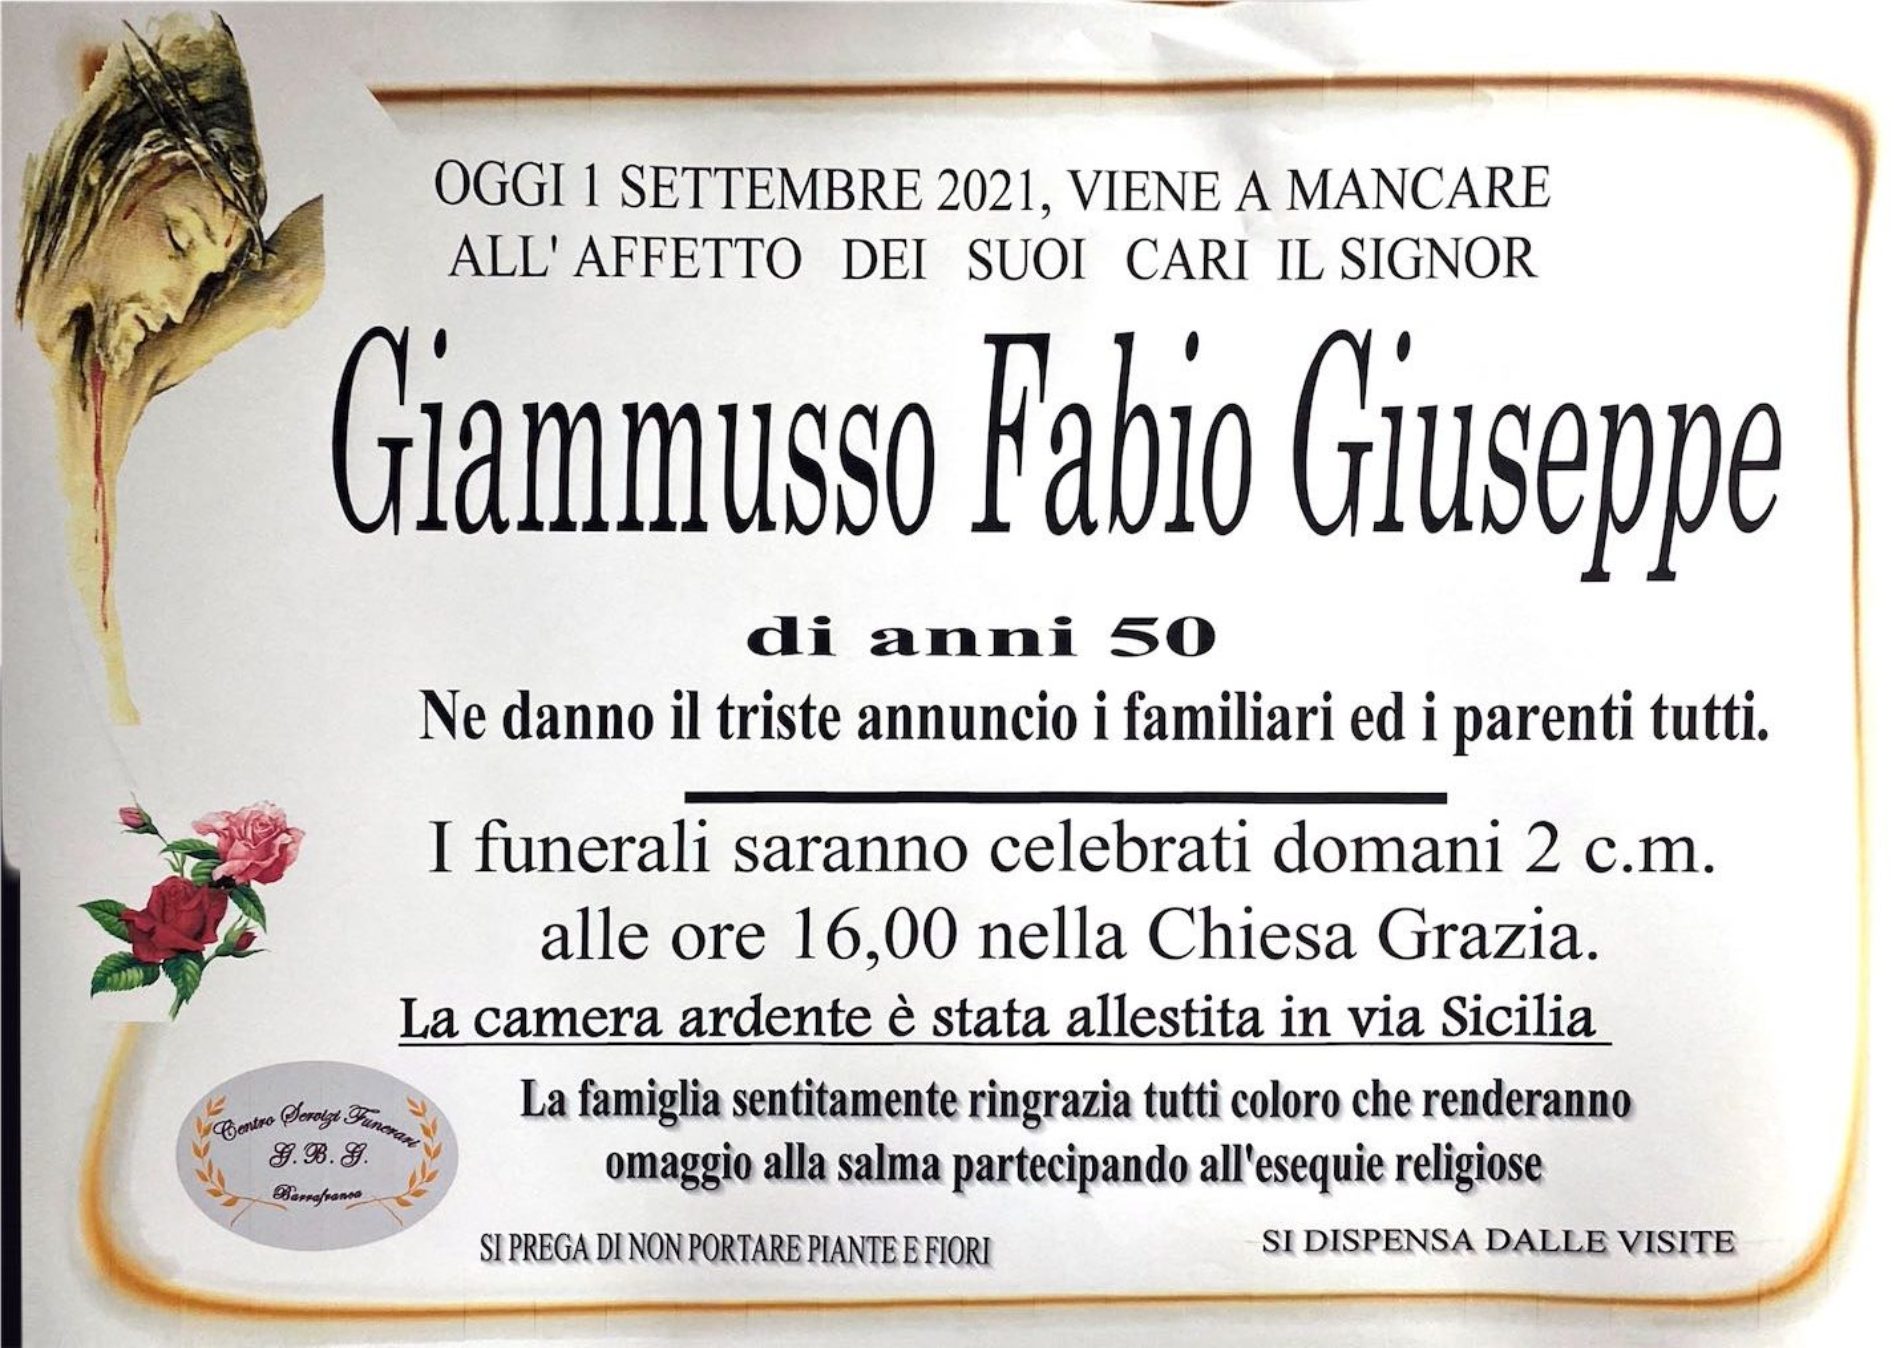 Annuncio servizi funerari agenzia G.B.G. sig. Giammusso Fabio Giuseppe  di anni 50